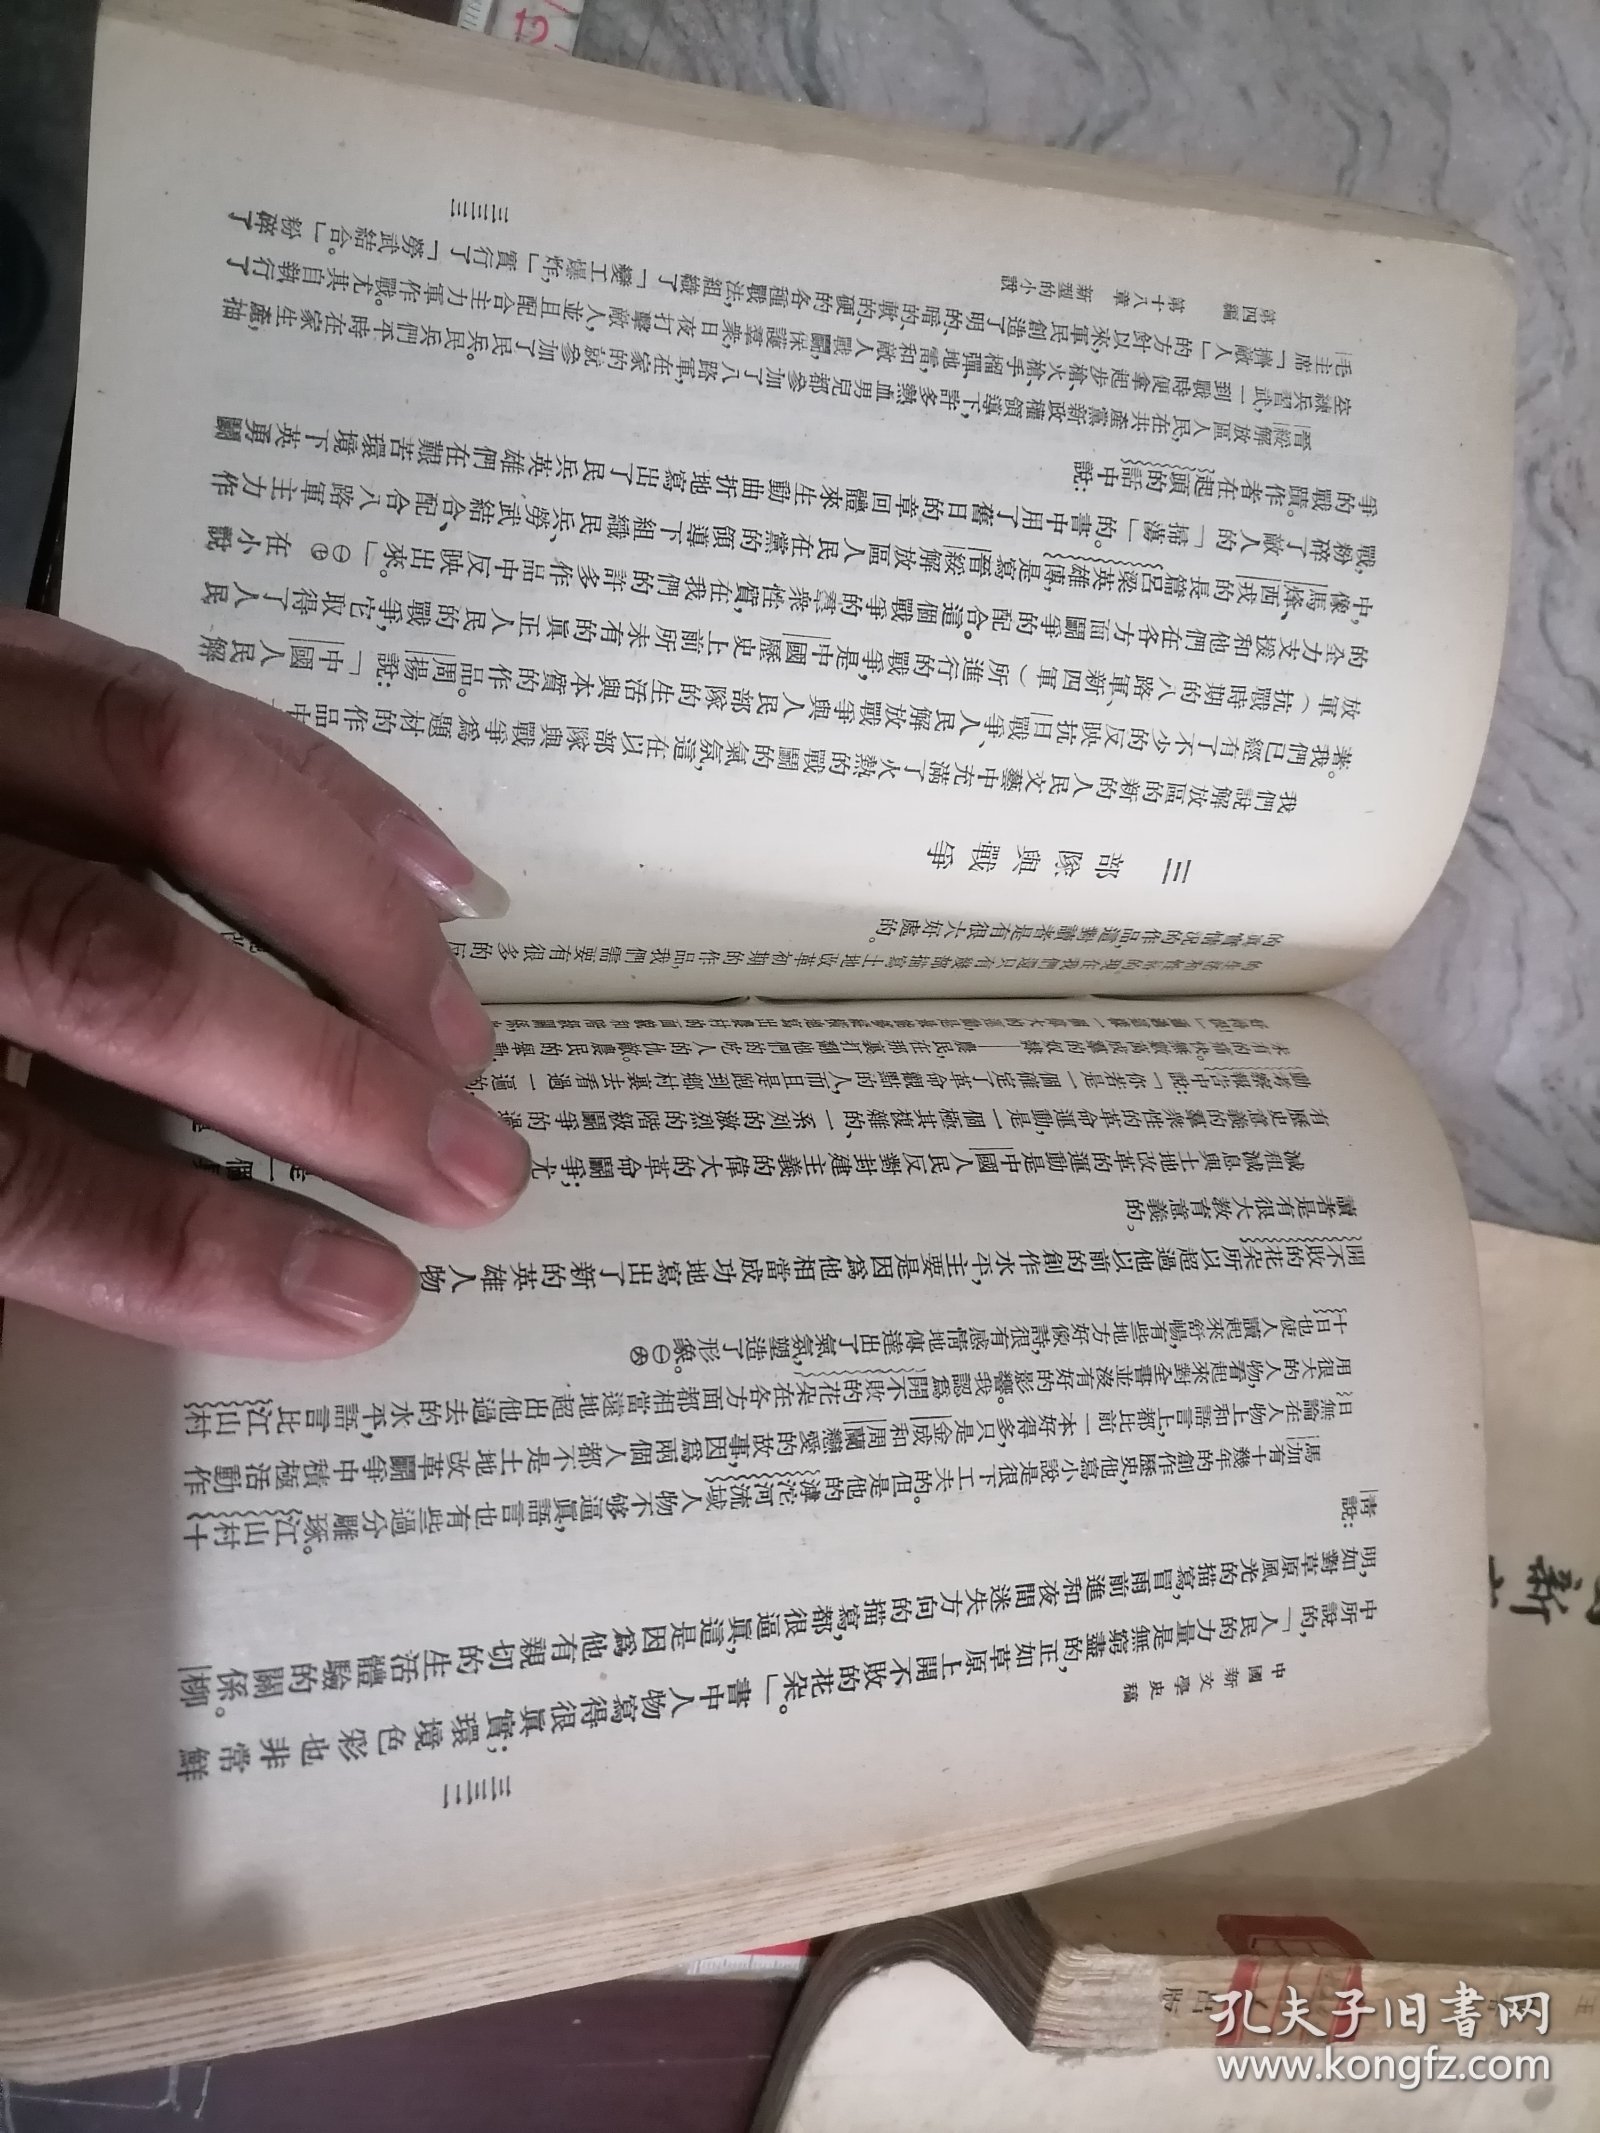 中国新文学史稿上下册1953上海文艺出版社王瑶著-小屋